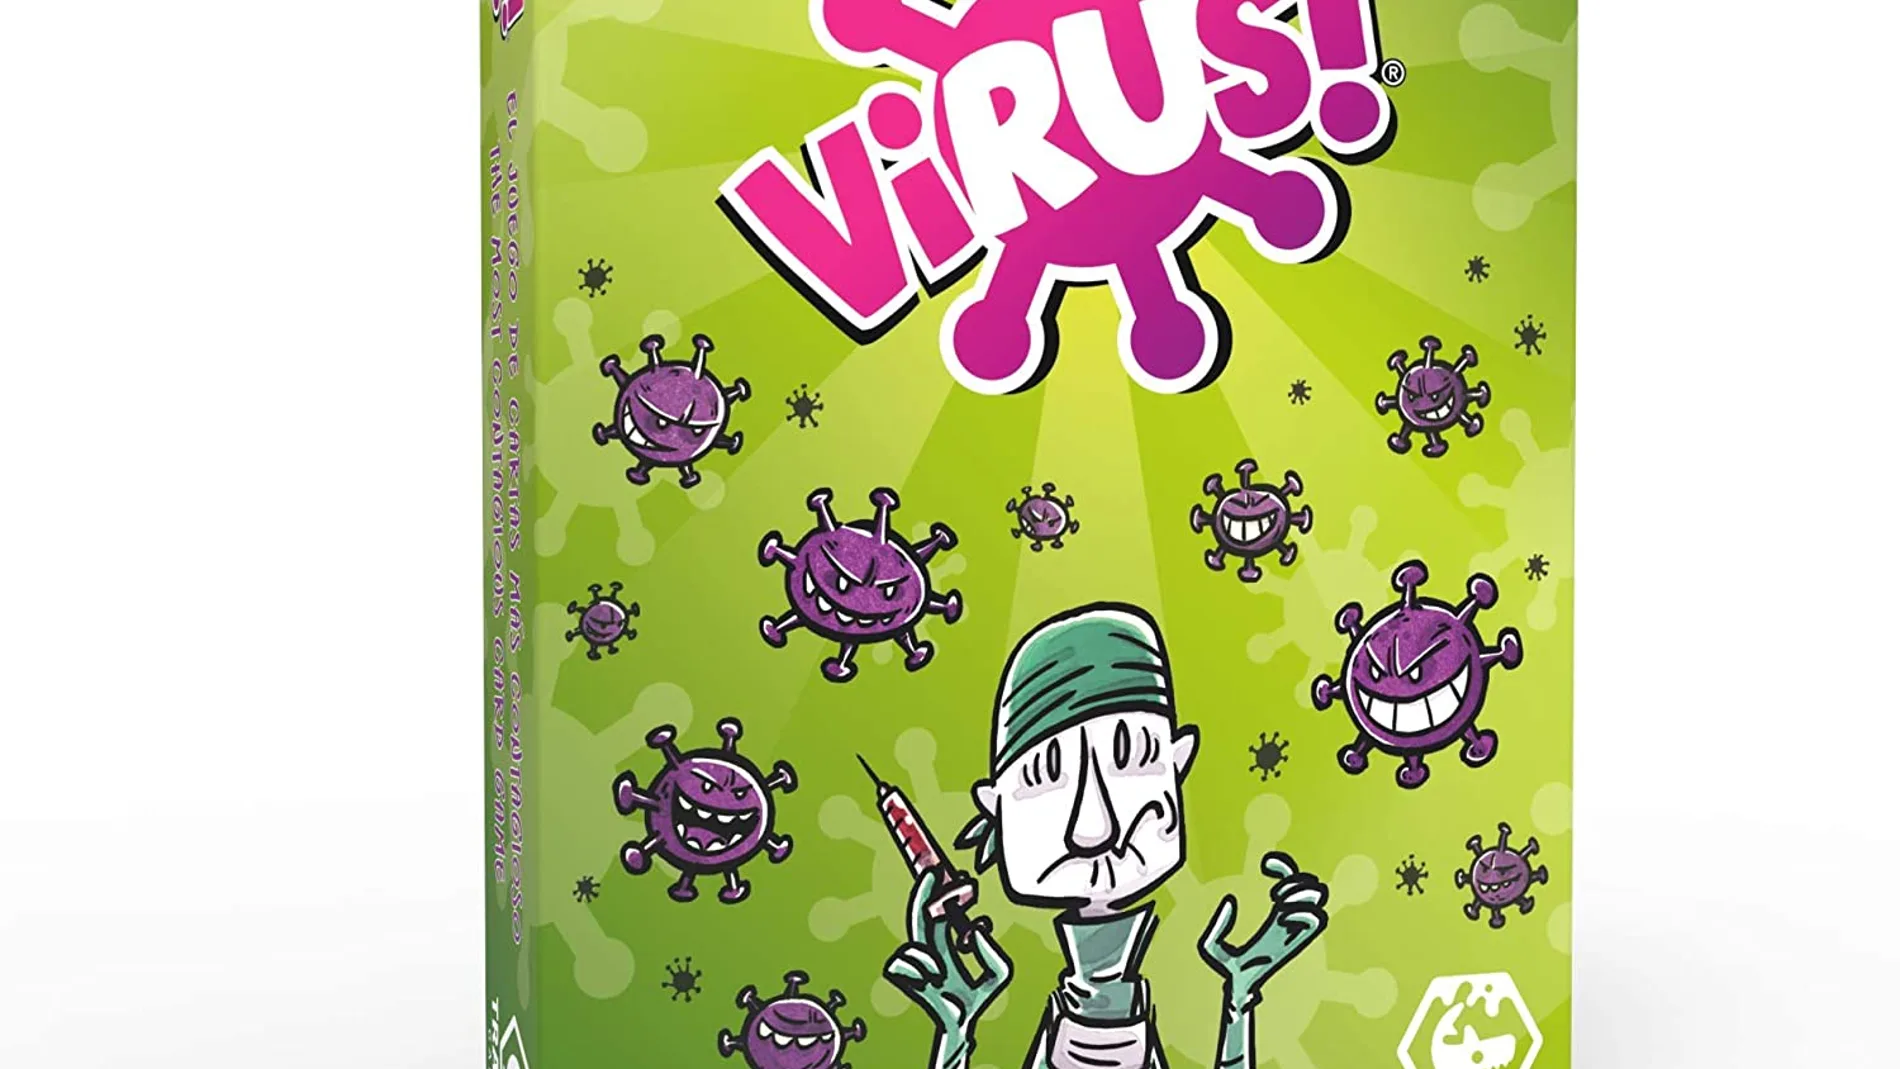 El Virus, siempre entre los juegos más vendidos en internet